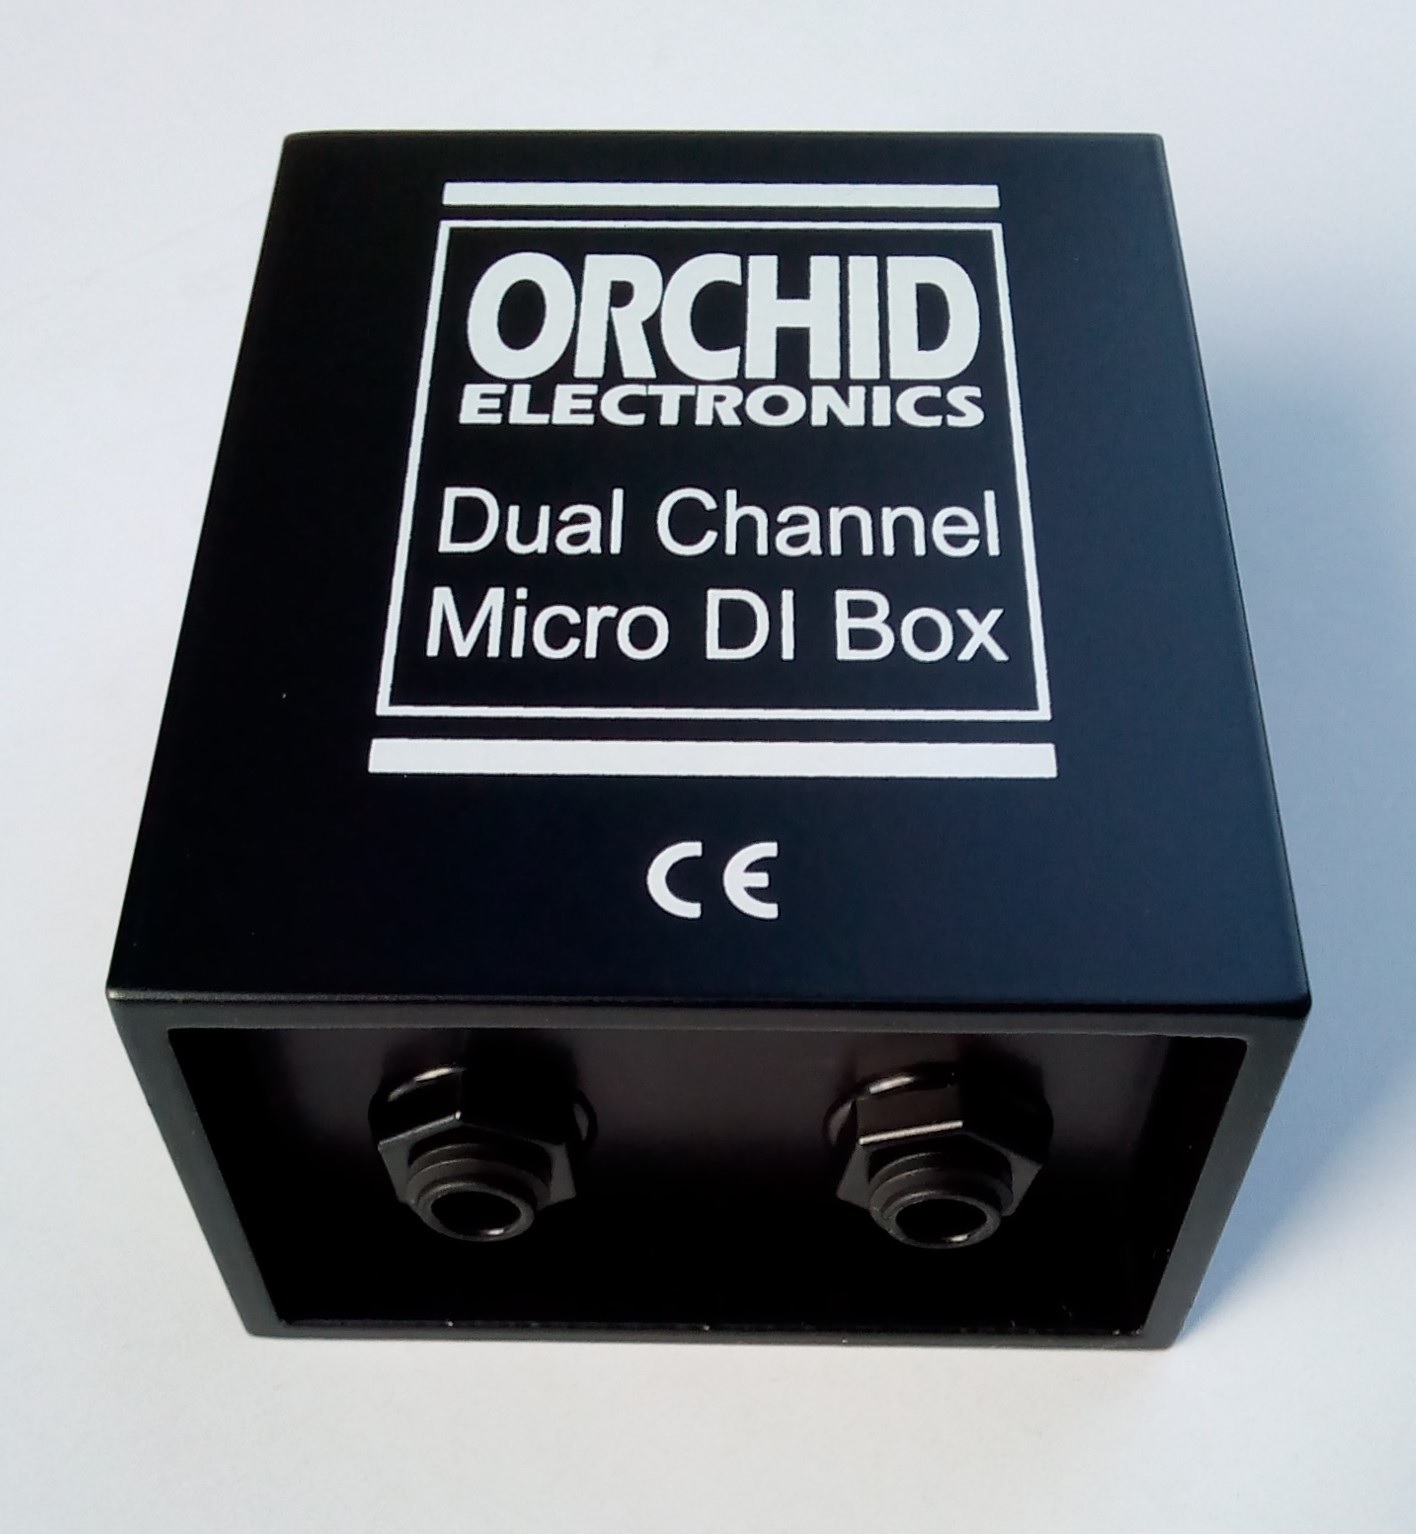 Dual Micro DI Box - jack socket view